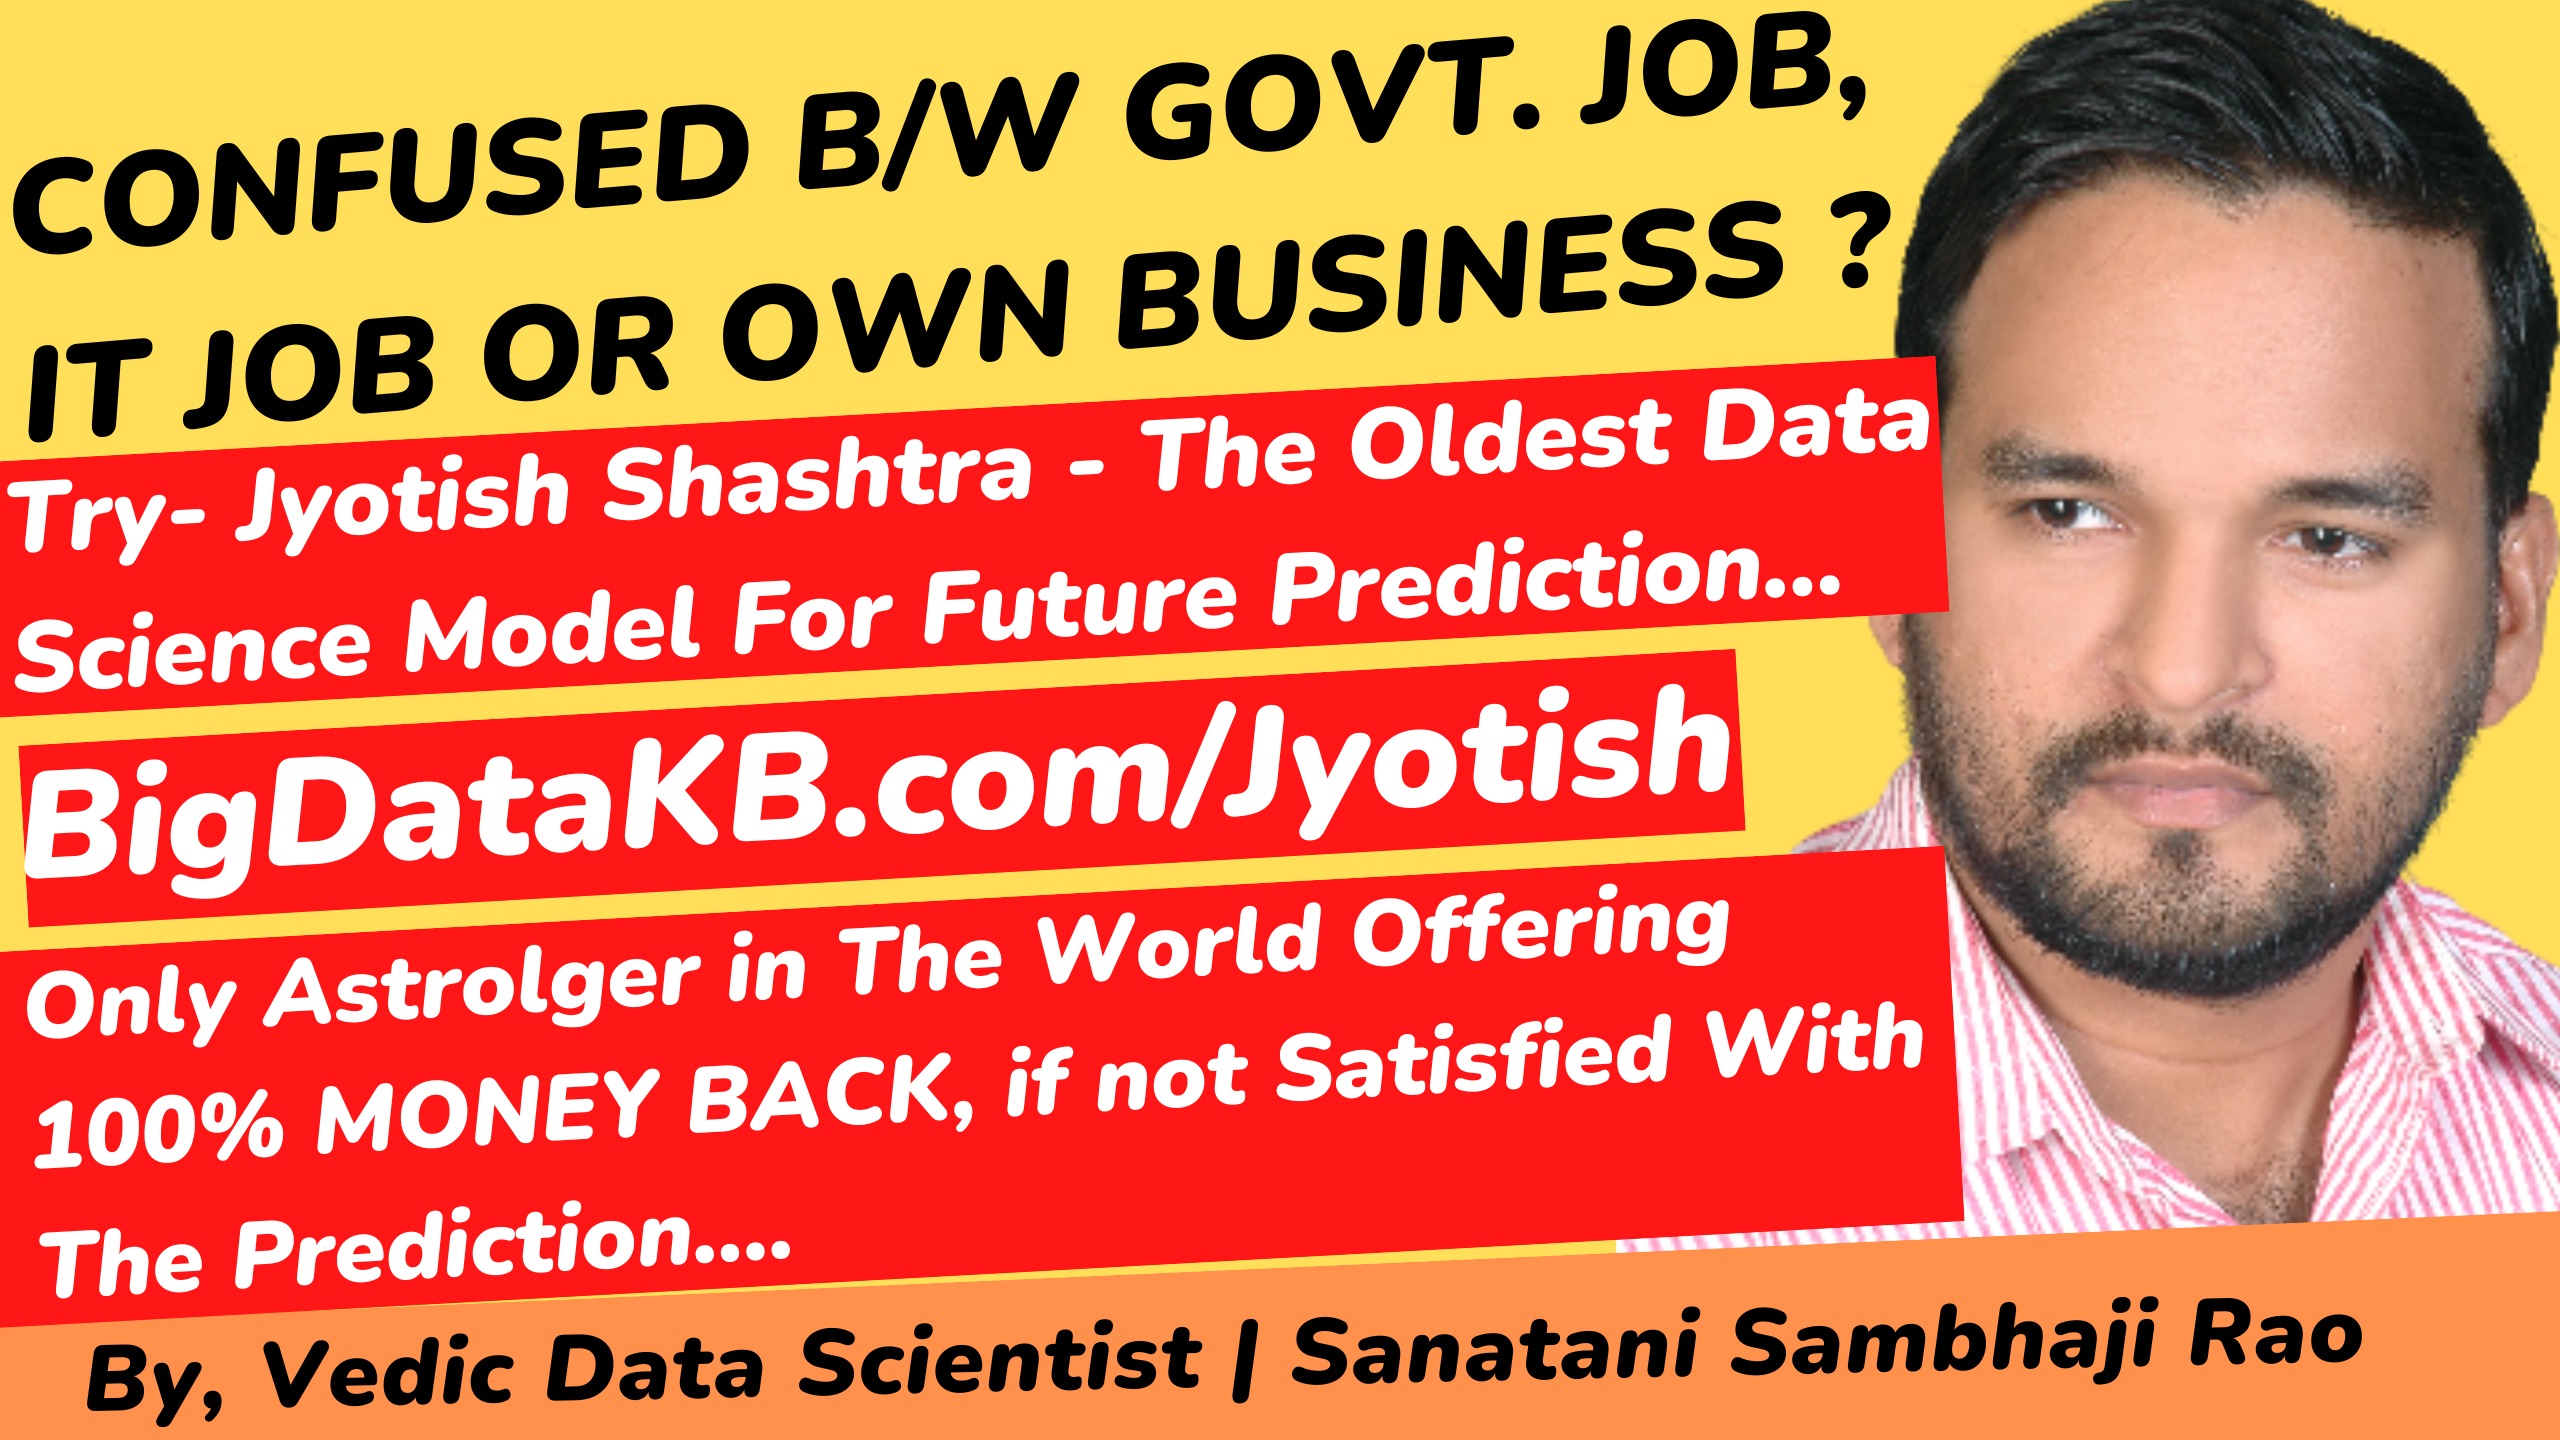 BigDataKB.com Jyotish